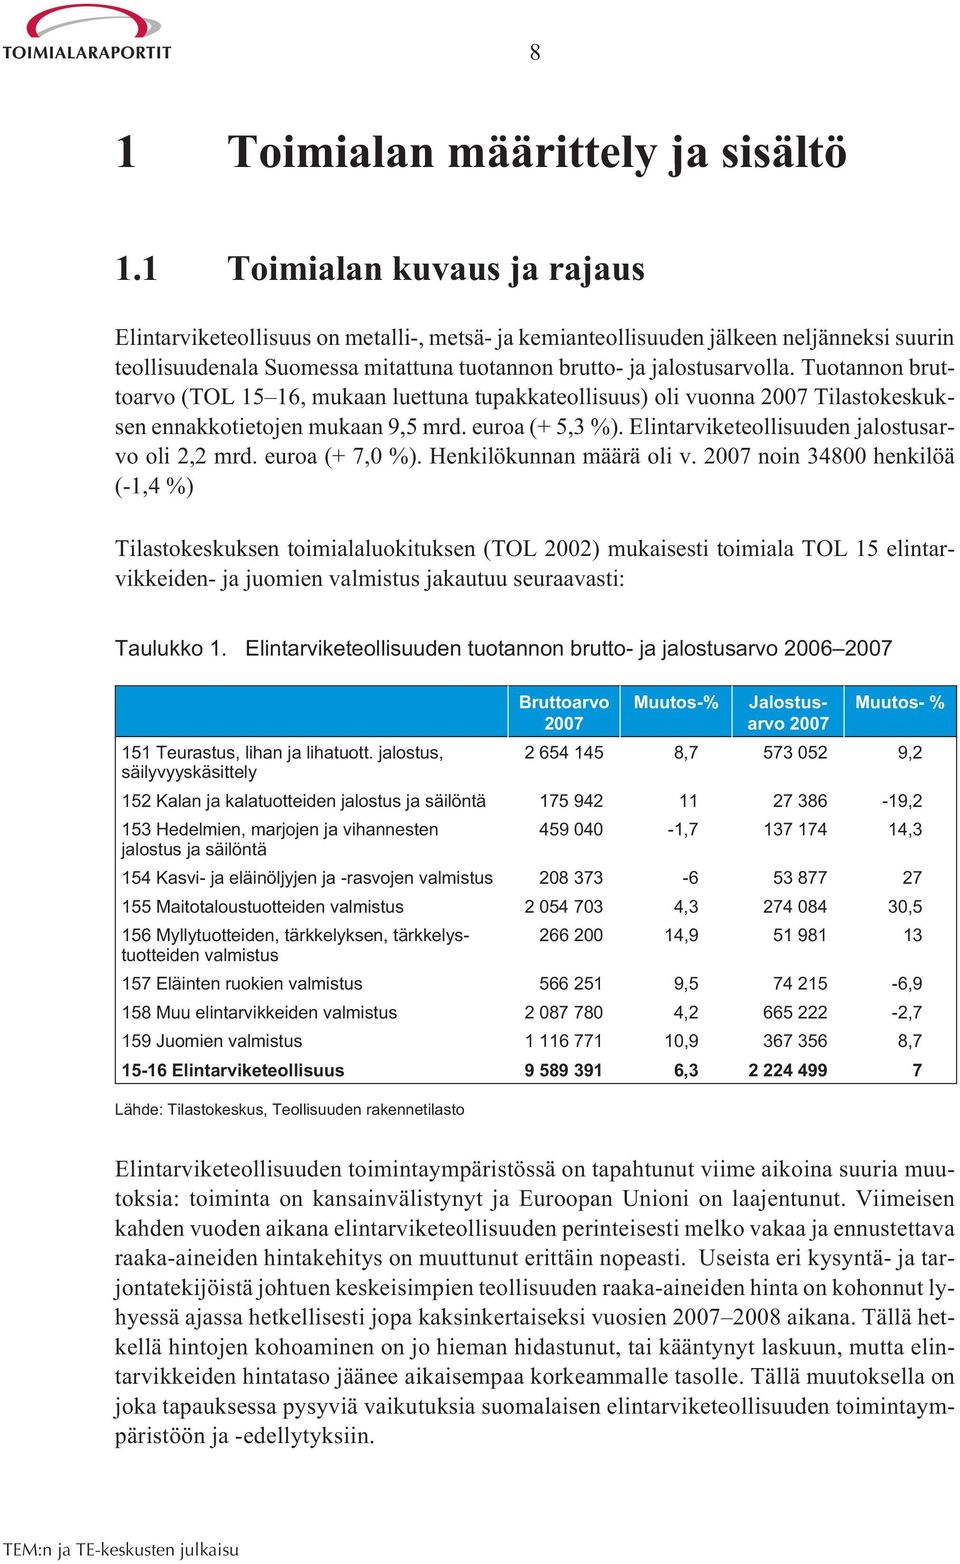 Tuotannon bruttoarvo (TOL 15 16, mukaan luettuna tupakkateollisuus) oli vuonna 2007 Tilastokeskuksen ennakkotietojen mukaan 9,5 mrd. euroa (+ 5,3 %). Elintarviketeollisuuden jalostusarvo oli 2,2 mrd.